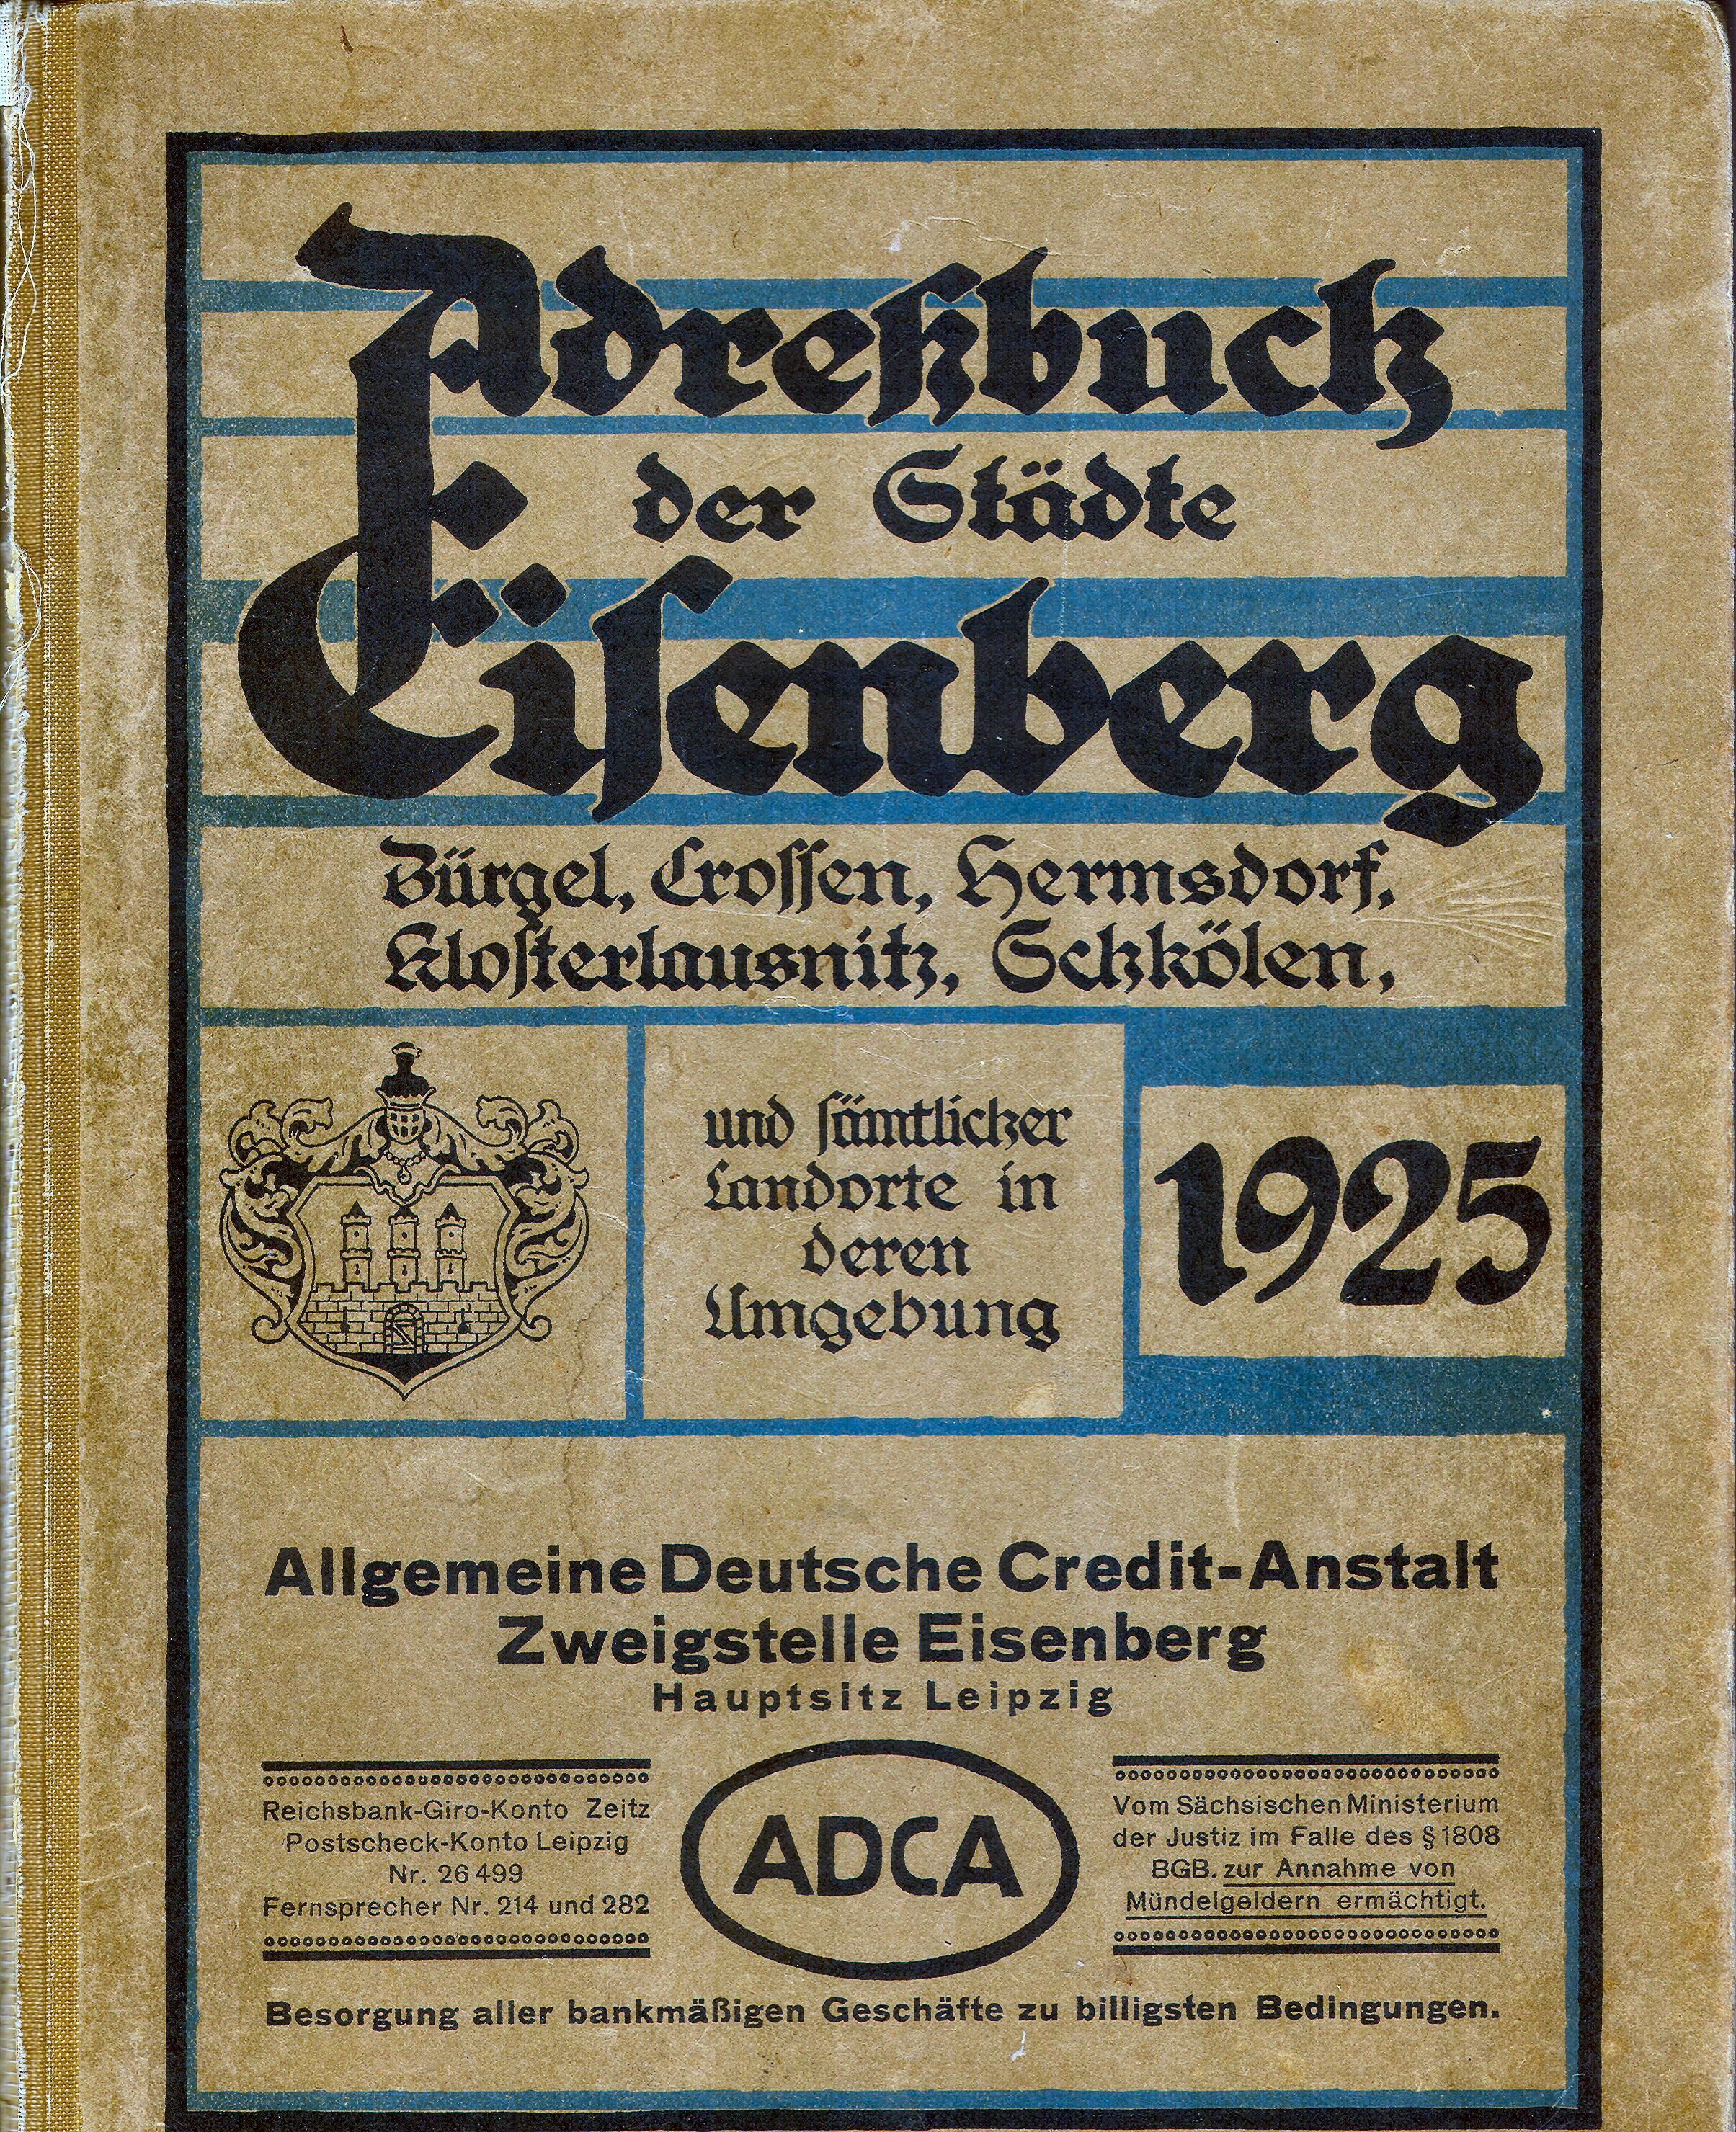 Adreßbuch der Städte Eisenberg, Bürgel, Crossen, Hermsdorf, Klosterlausnitz, Schkölen und sämtlicher Landorte in deren Umgebung 1925